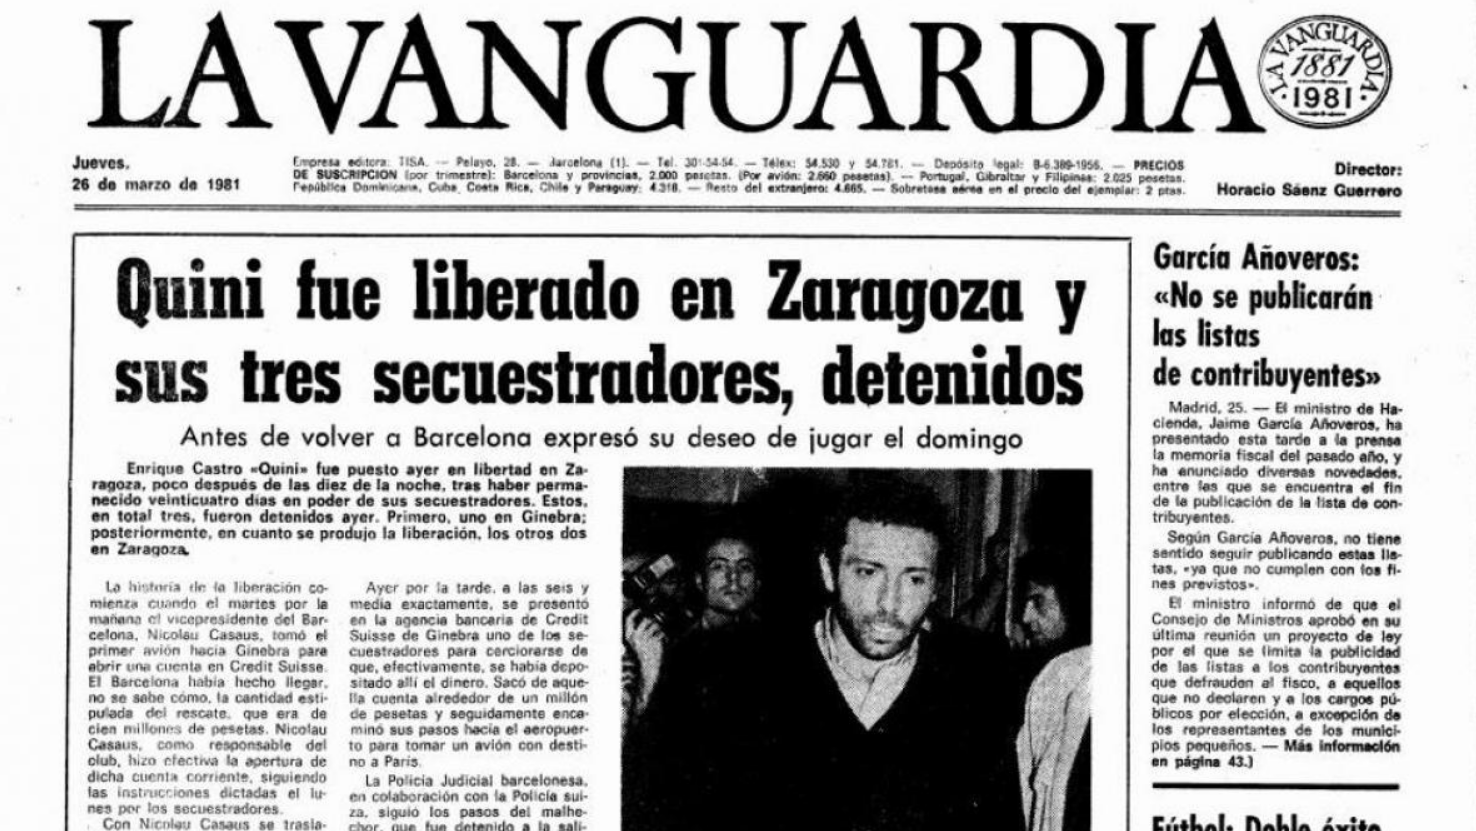 Новость об освобождении Кини, 26 марта 1981 года. Фото Lavanguardia